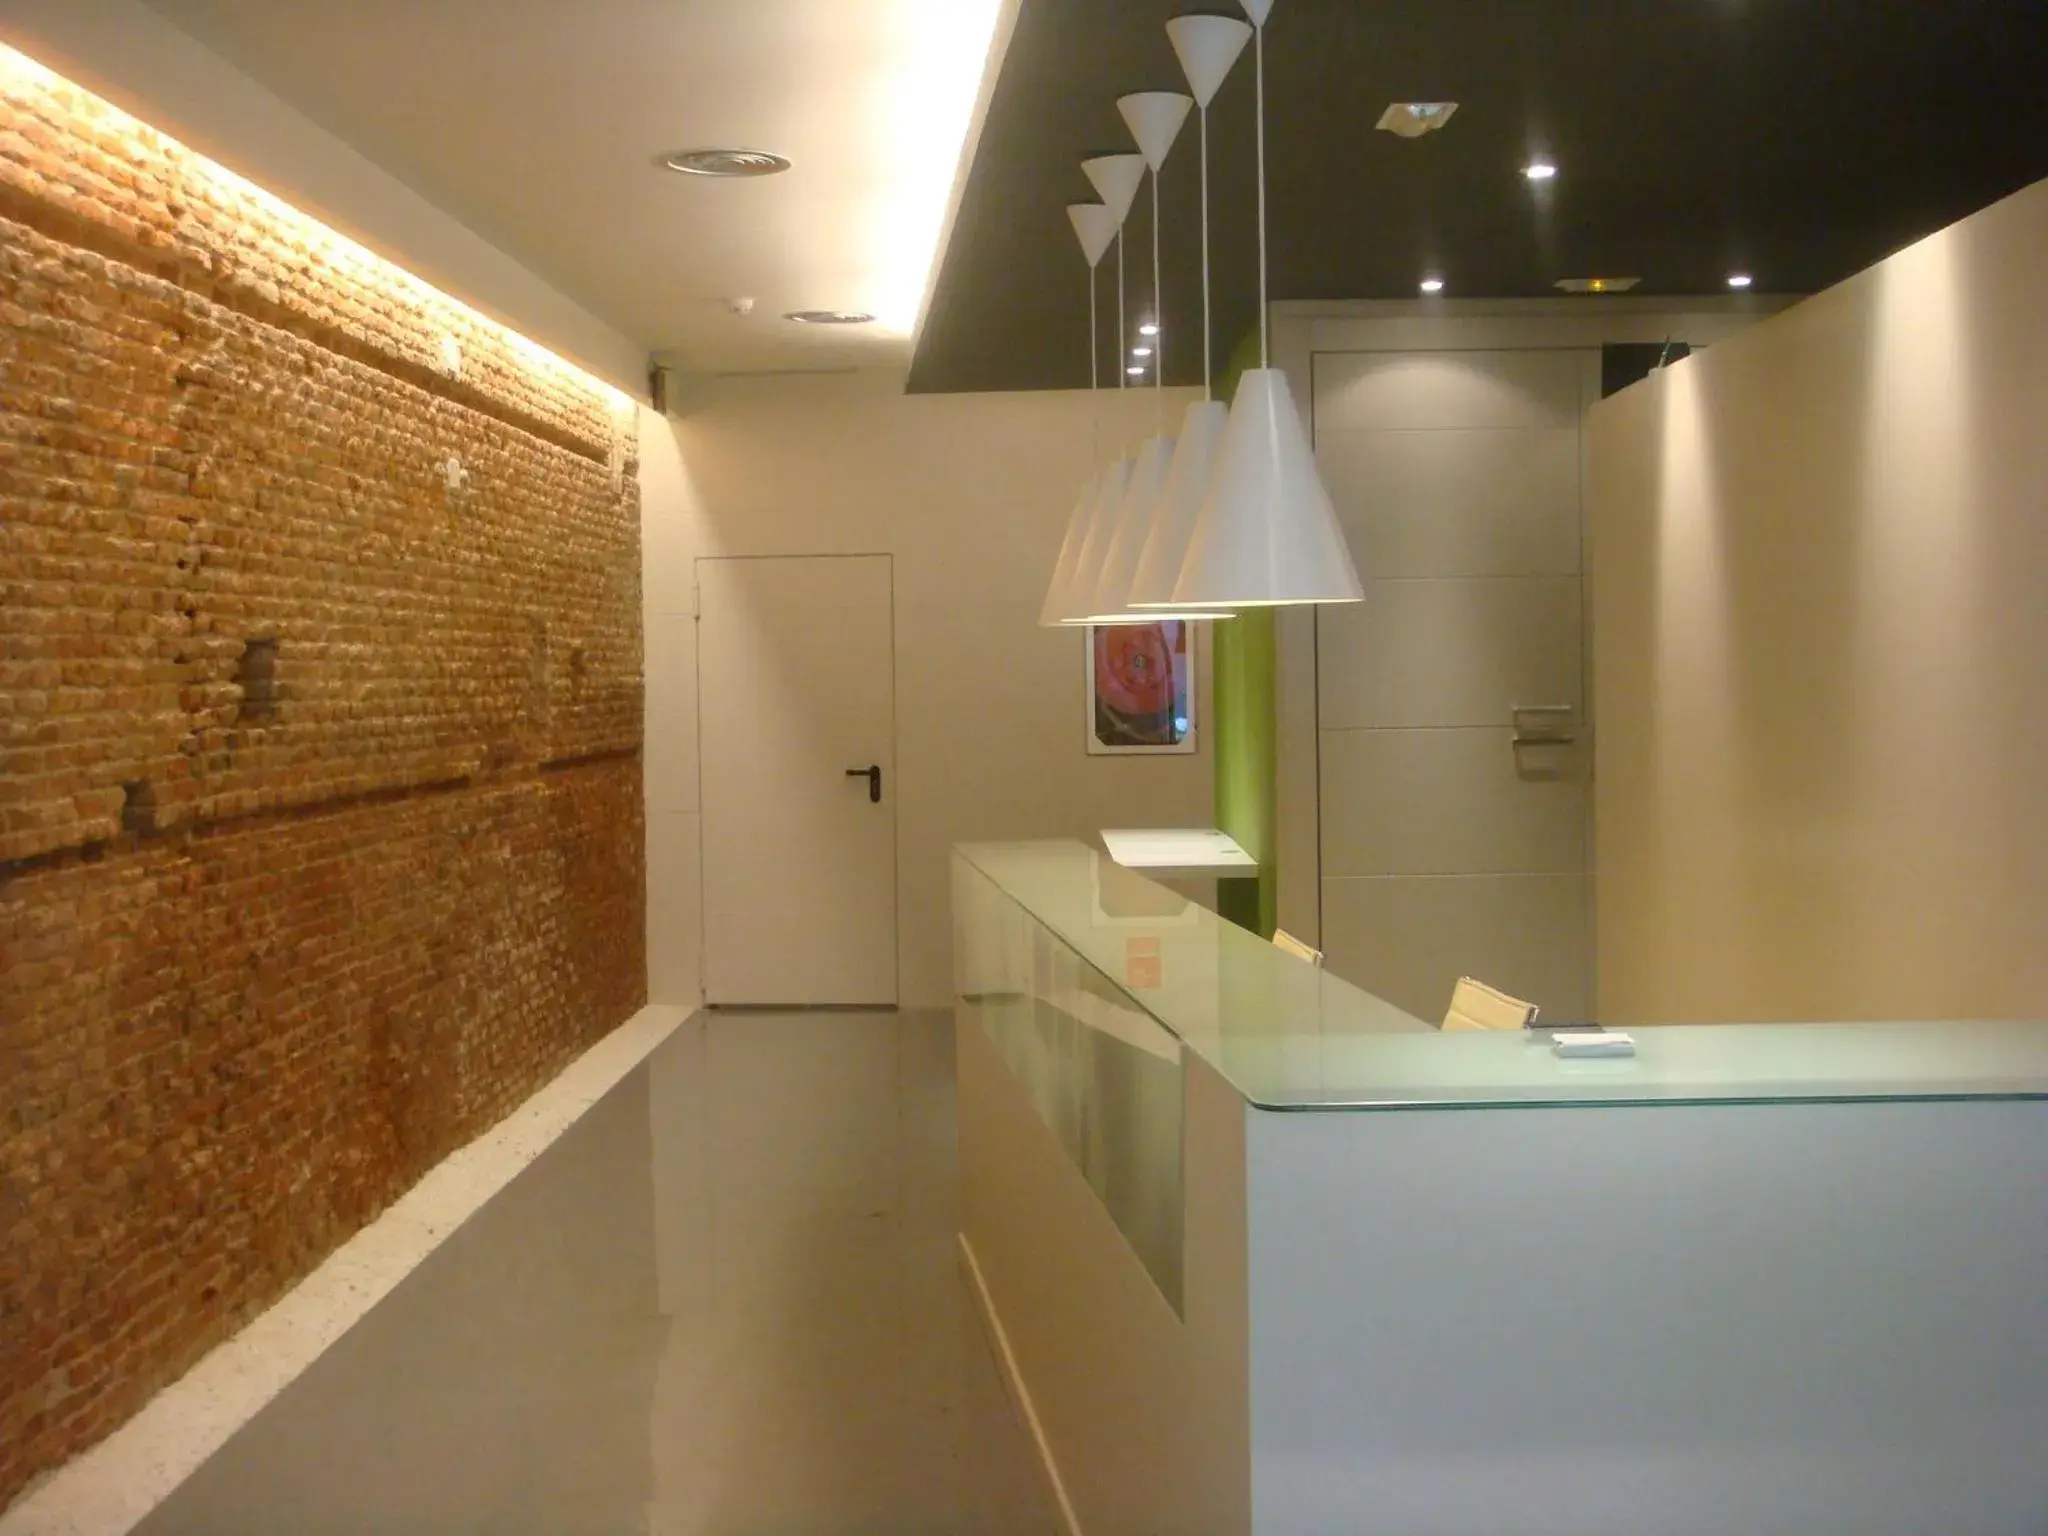 Lobby or reception, Lobby/Reception in Urban Sea Hotel Atocha 113